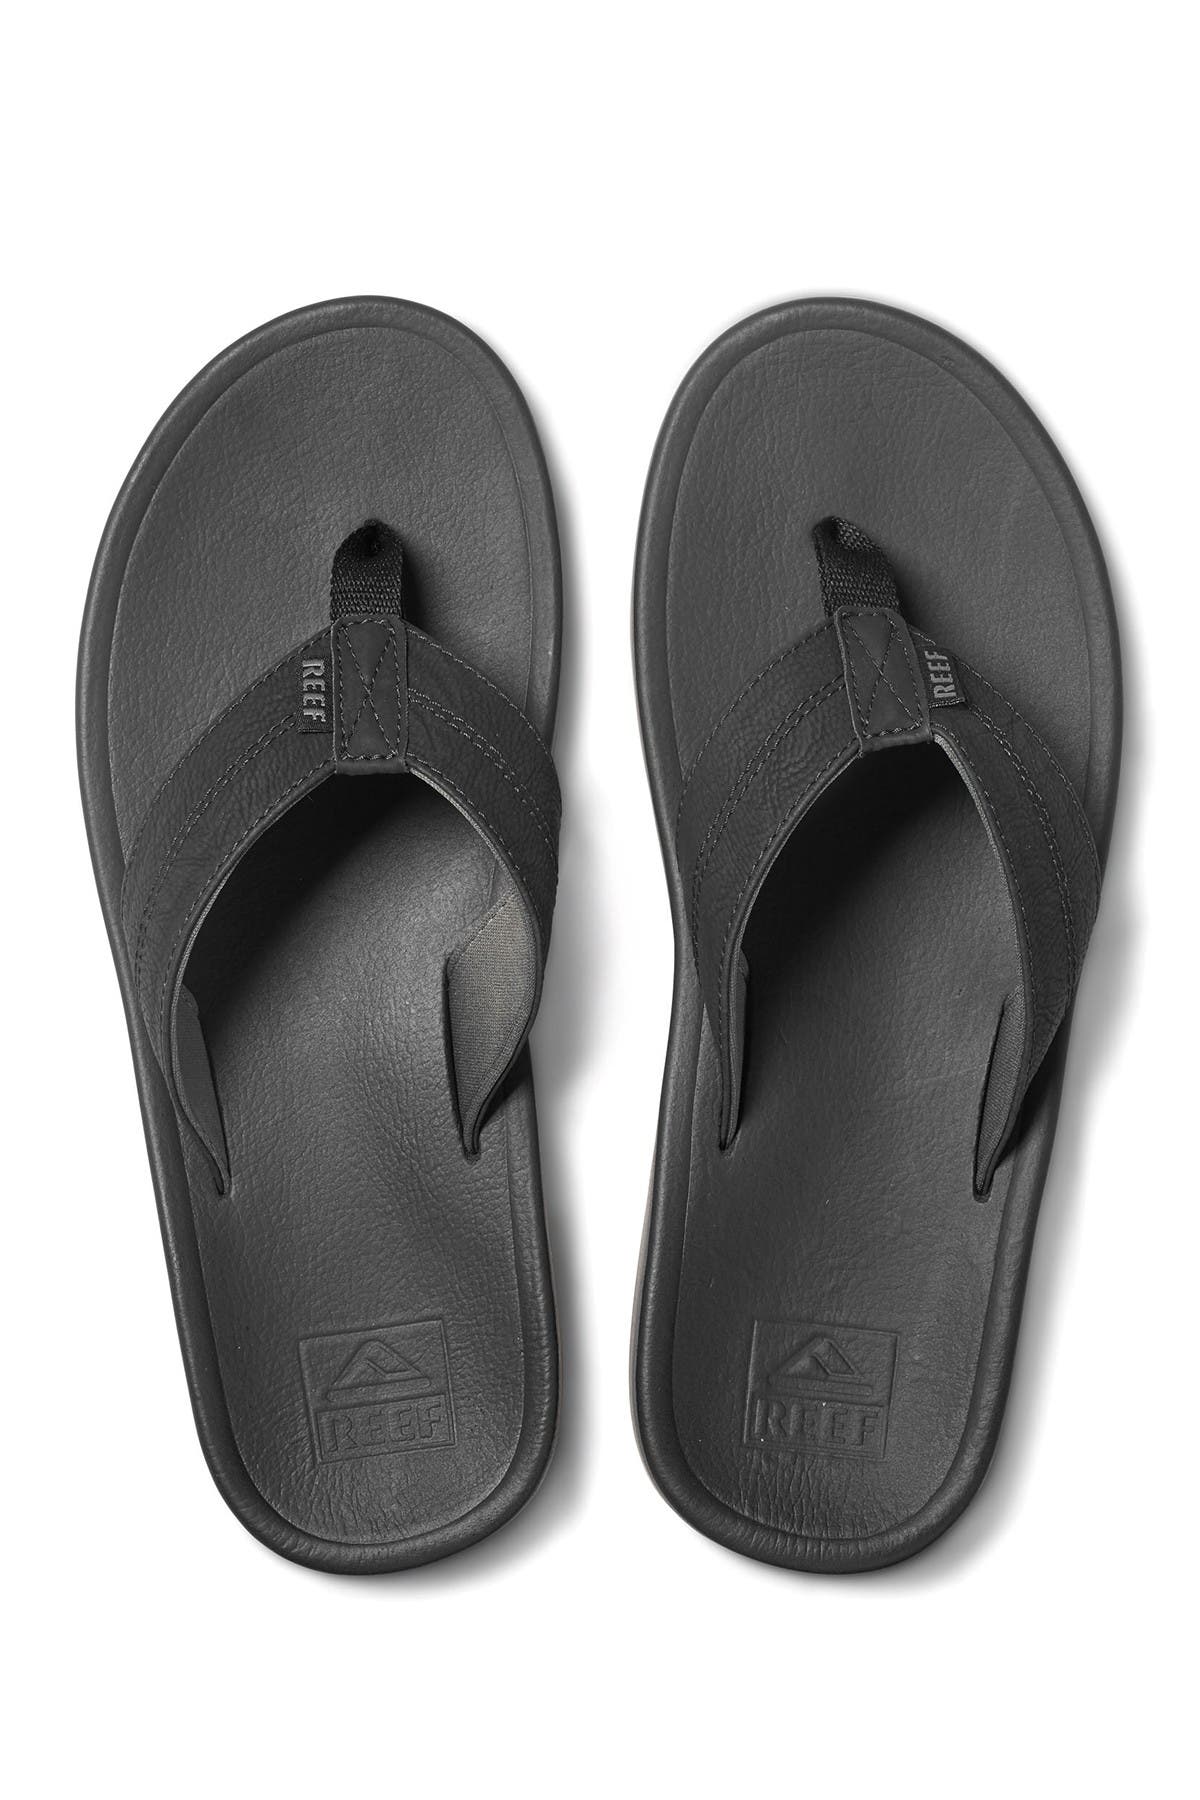 reef journeyer men's flip flop sandals